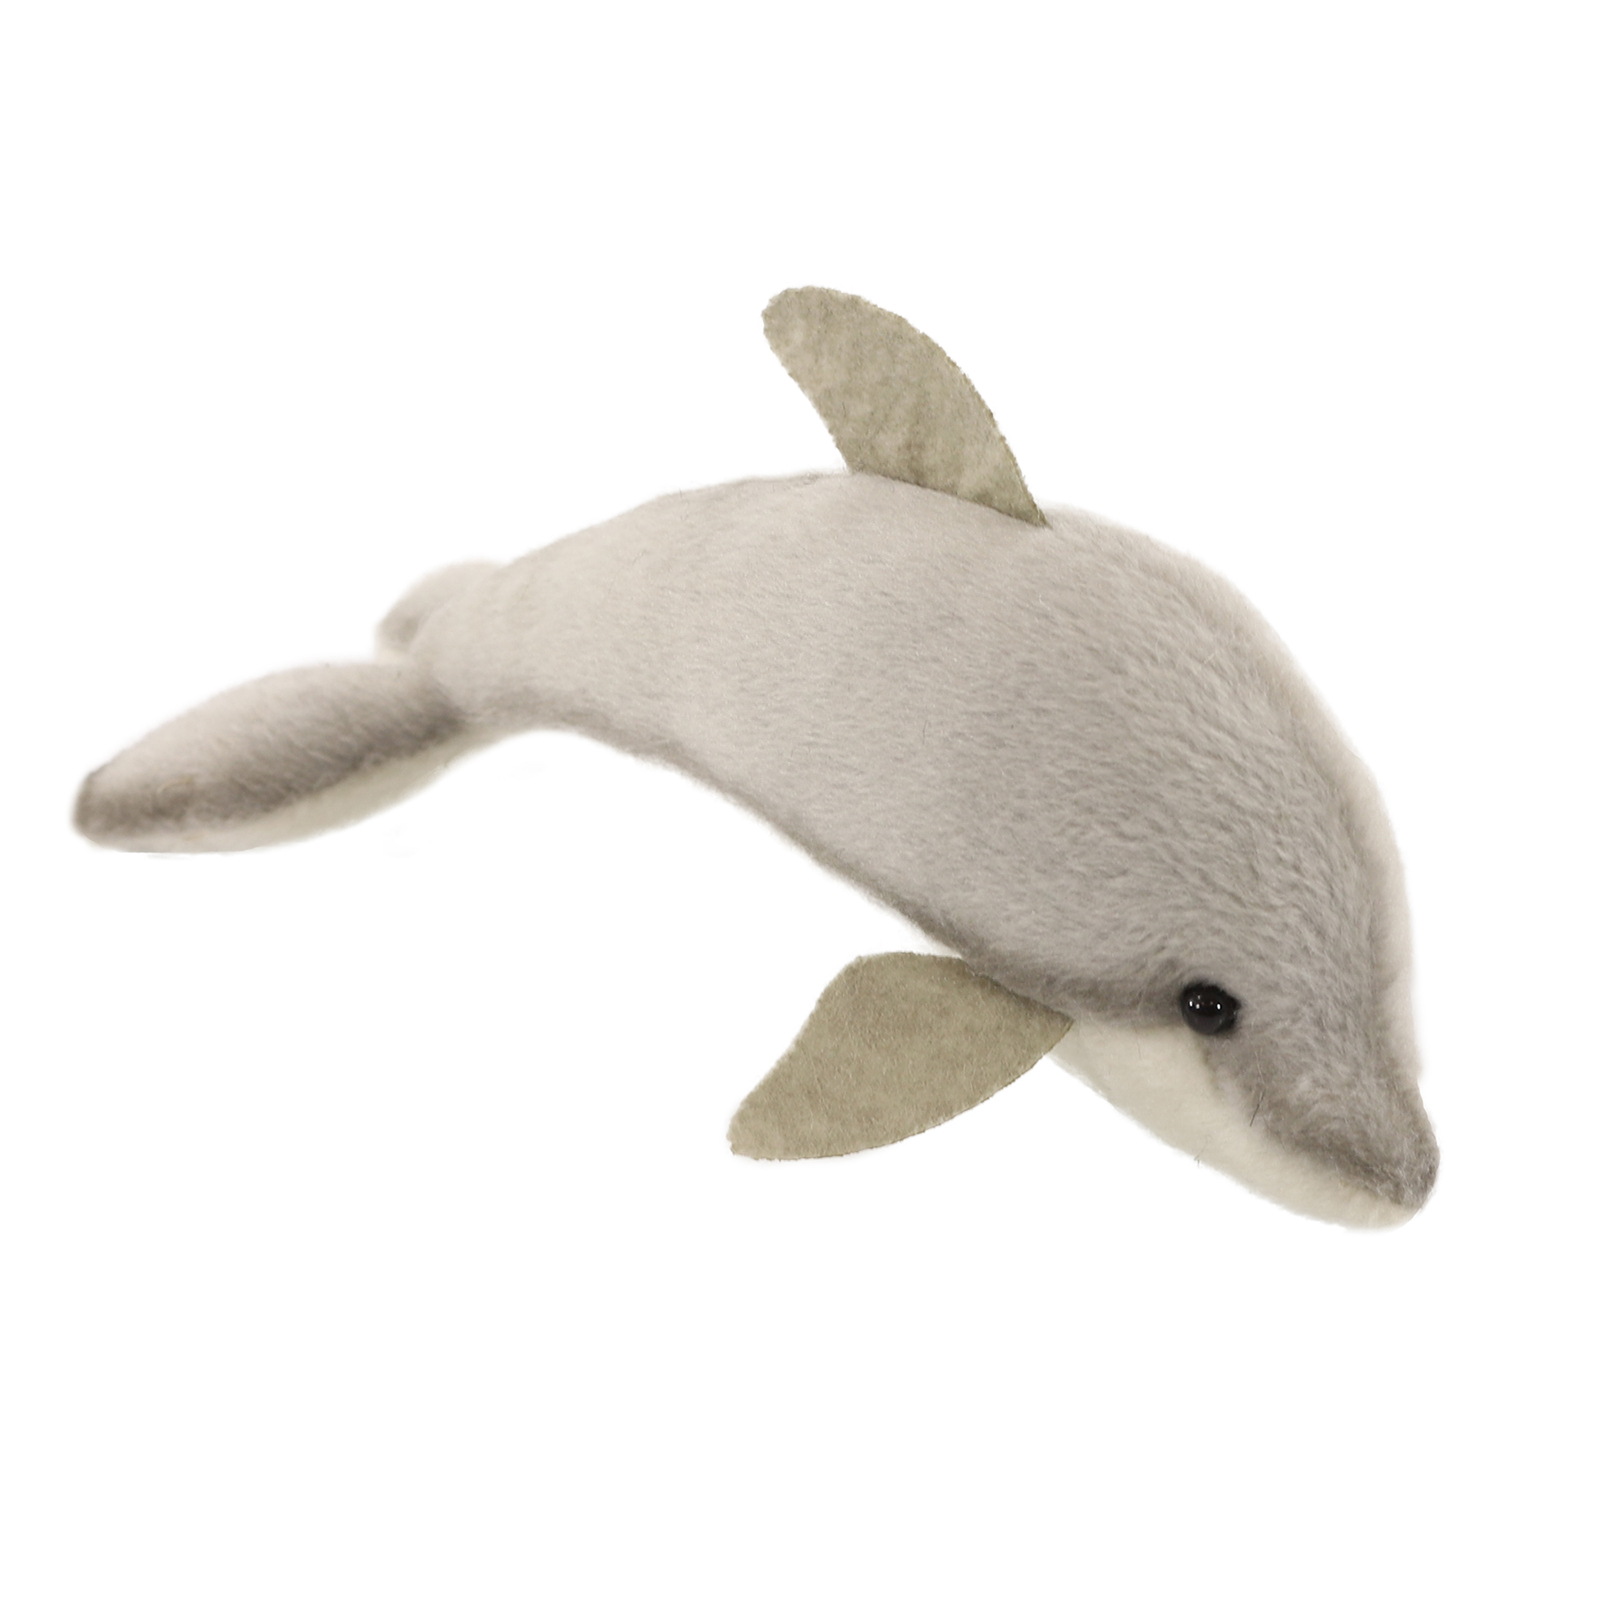 Реалистичная мягкая игрушка Hansa Creation Дельфин обыкновенный, 20 см мягкая игрушка teddykompaniet дельфин 26 см